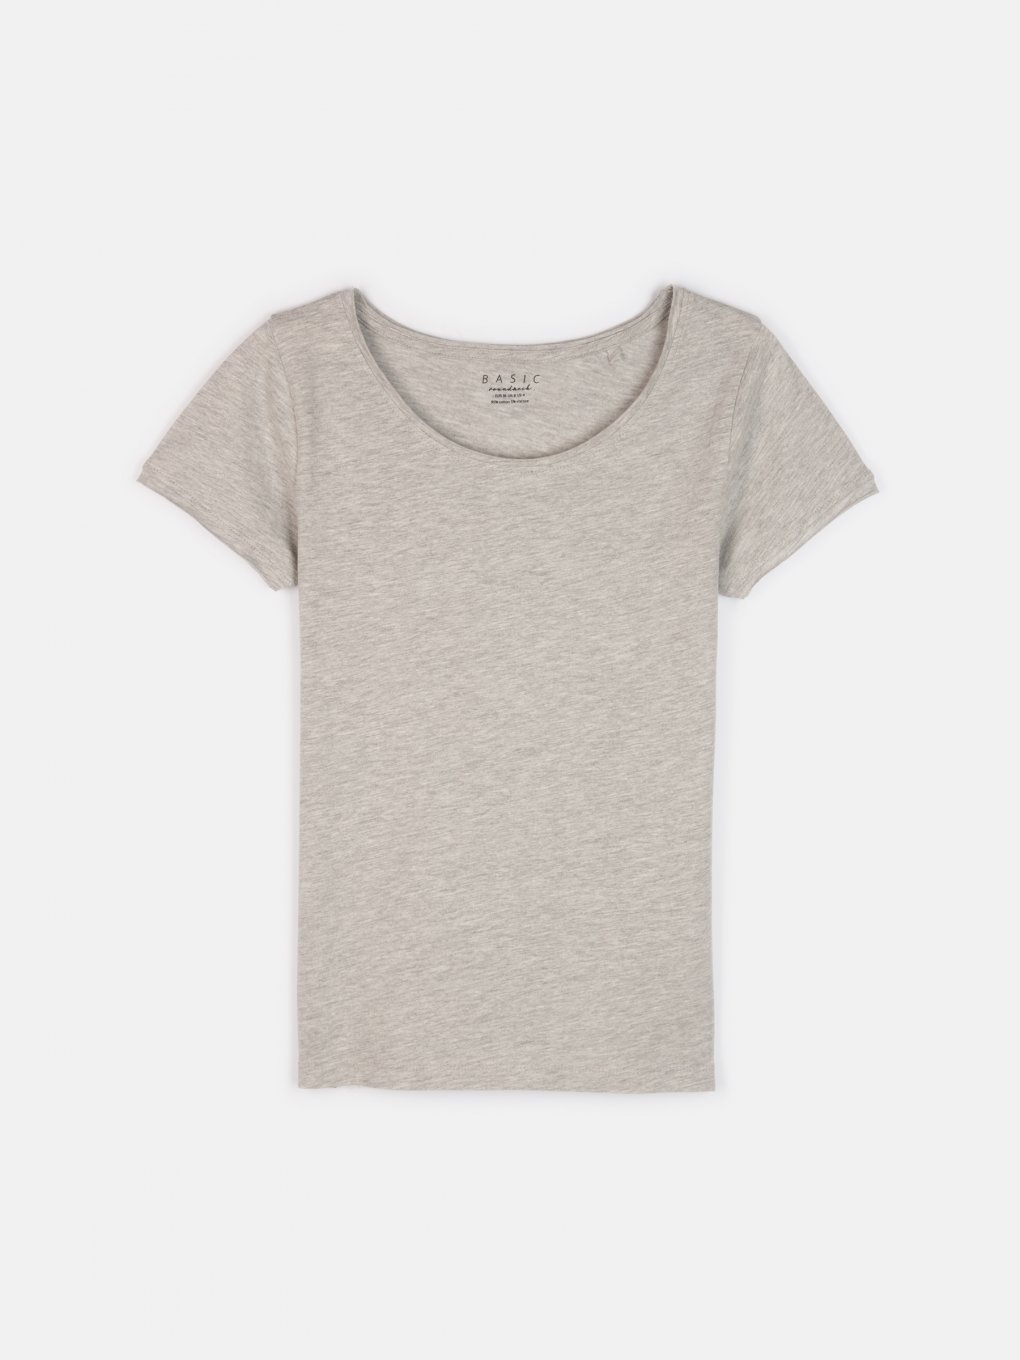 Basic short sleeve t-shirt with raw edges